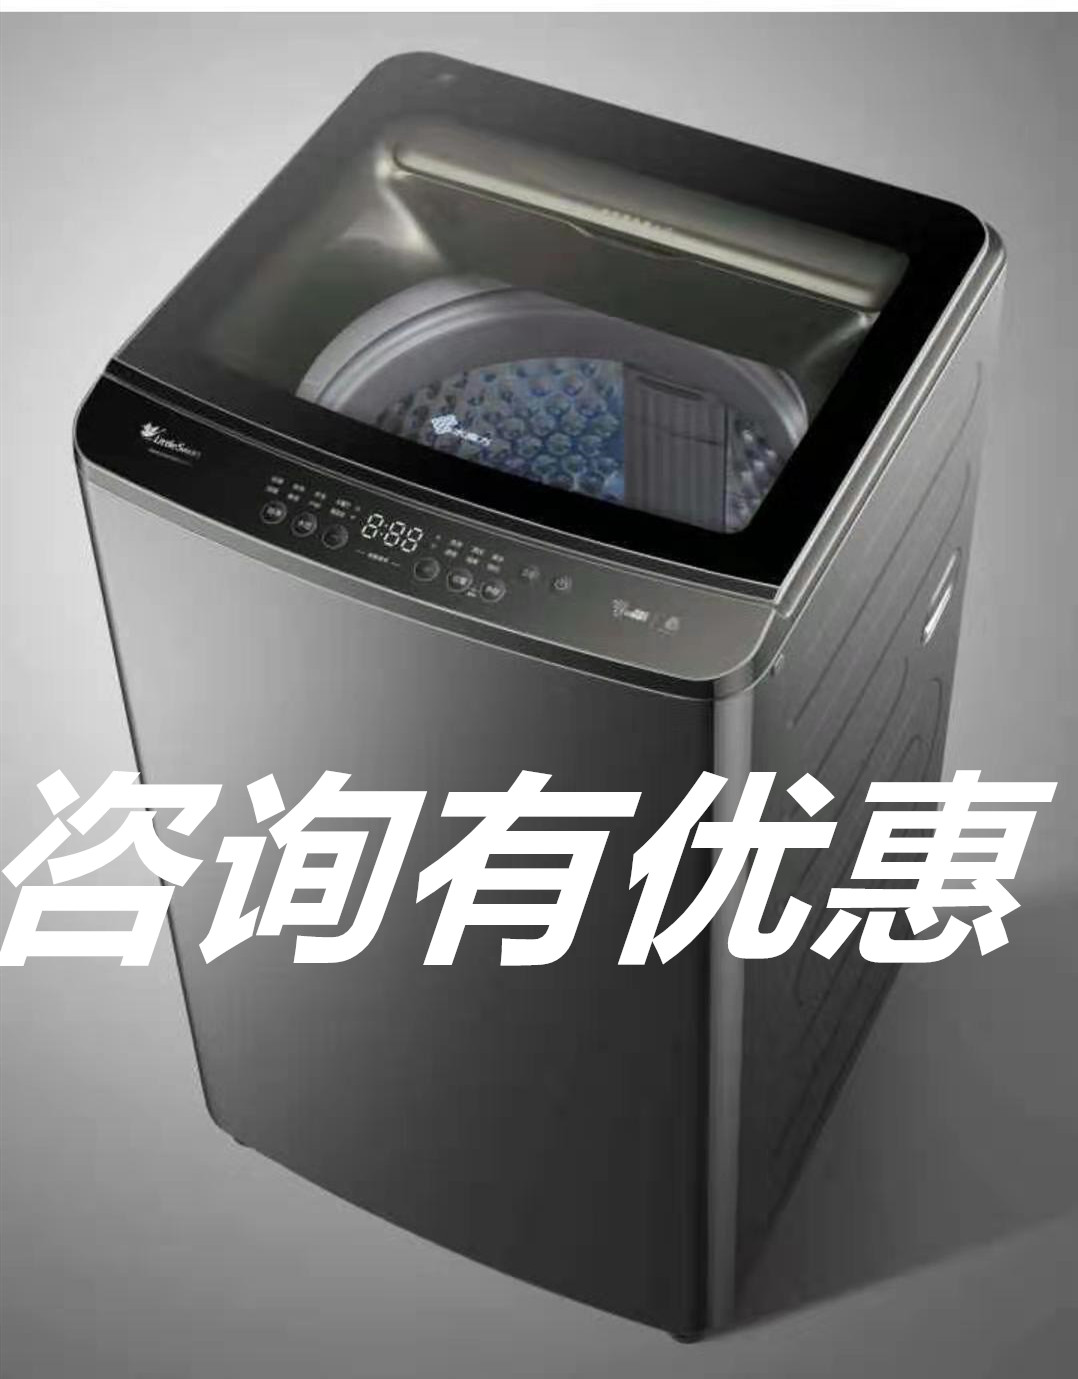 中国洗衣机品牌排行榜_堡垒机品牌排行_品牌排行家用冰激凌机